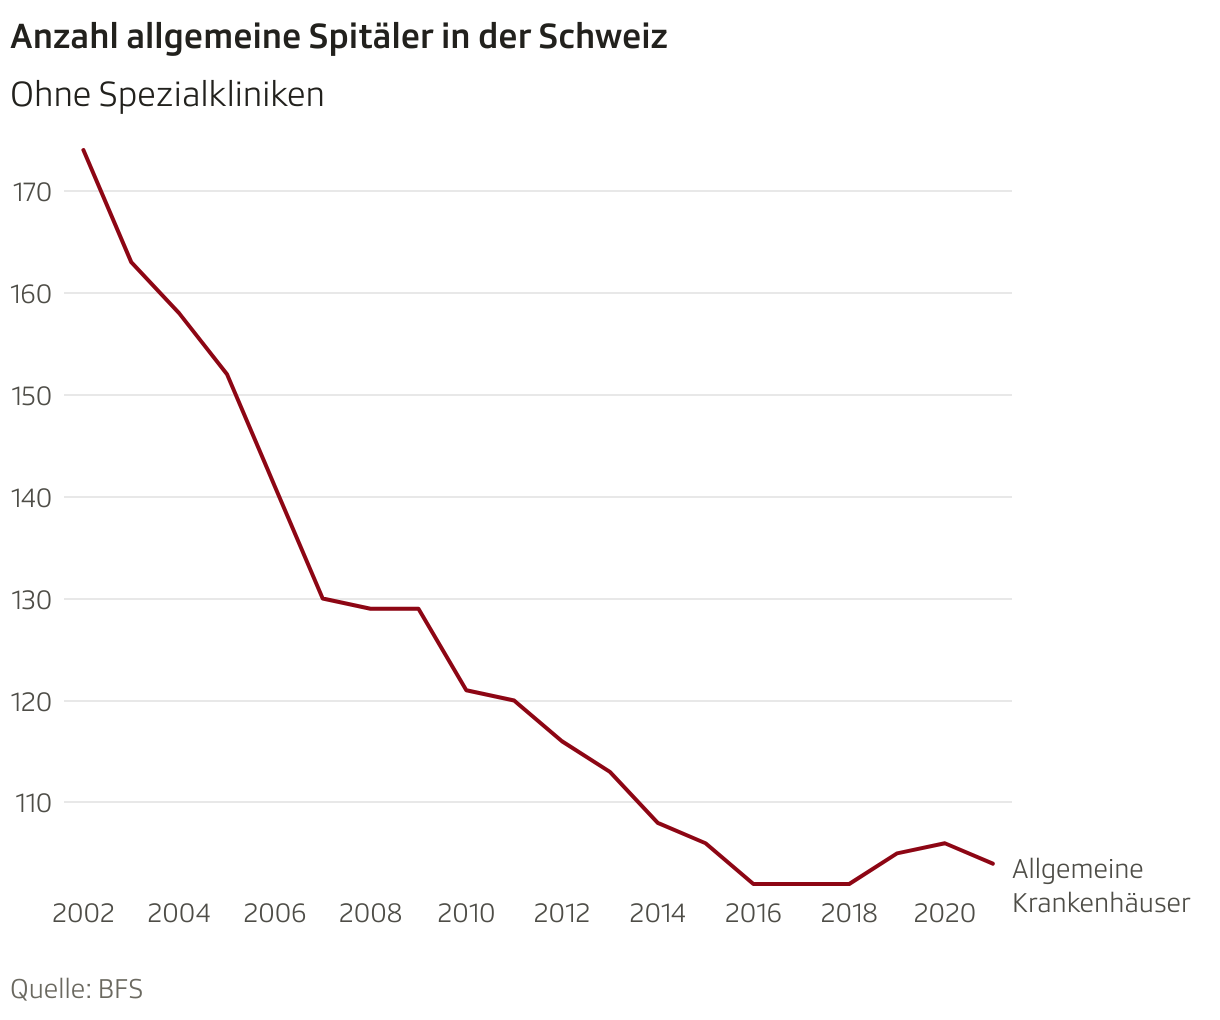 Anzahl allgemeine Spitäler in der Schweiz